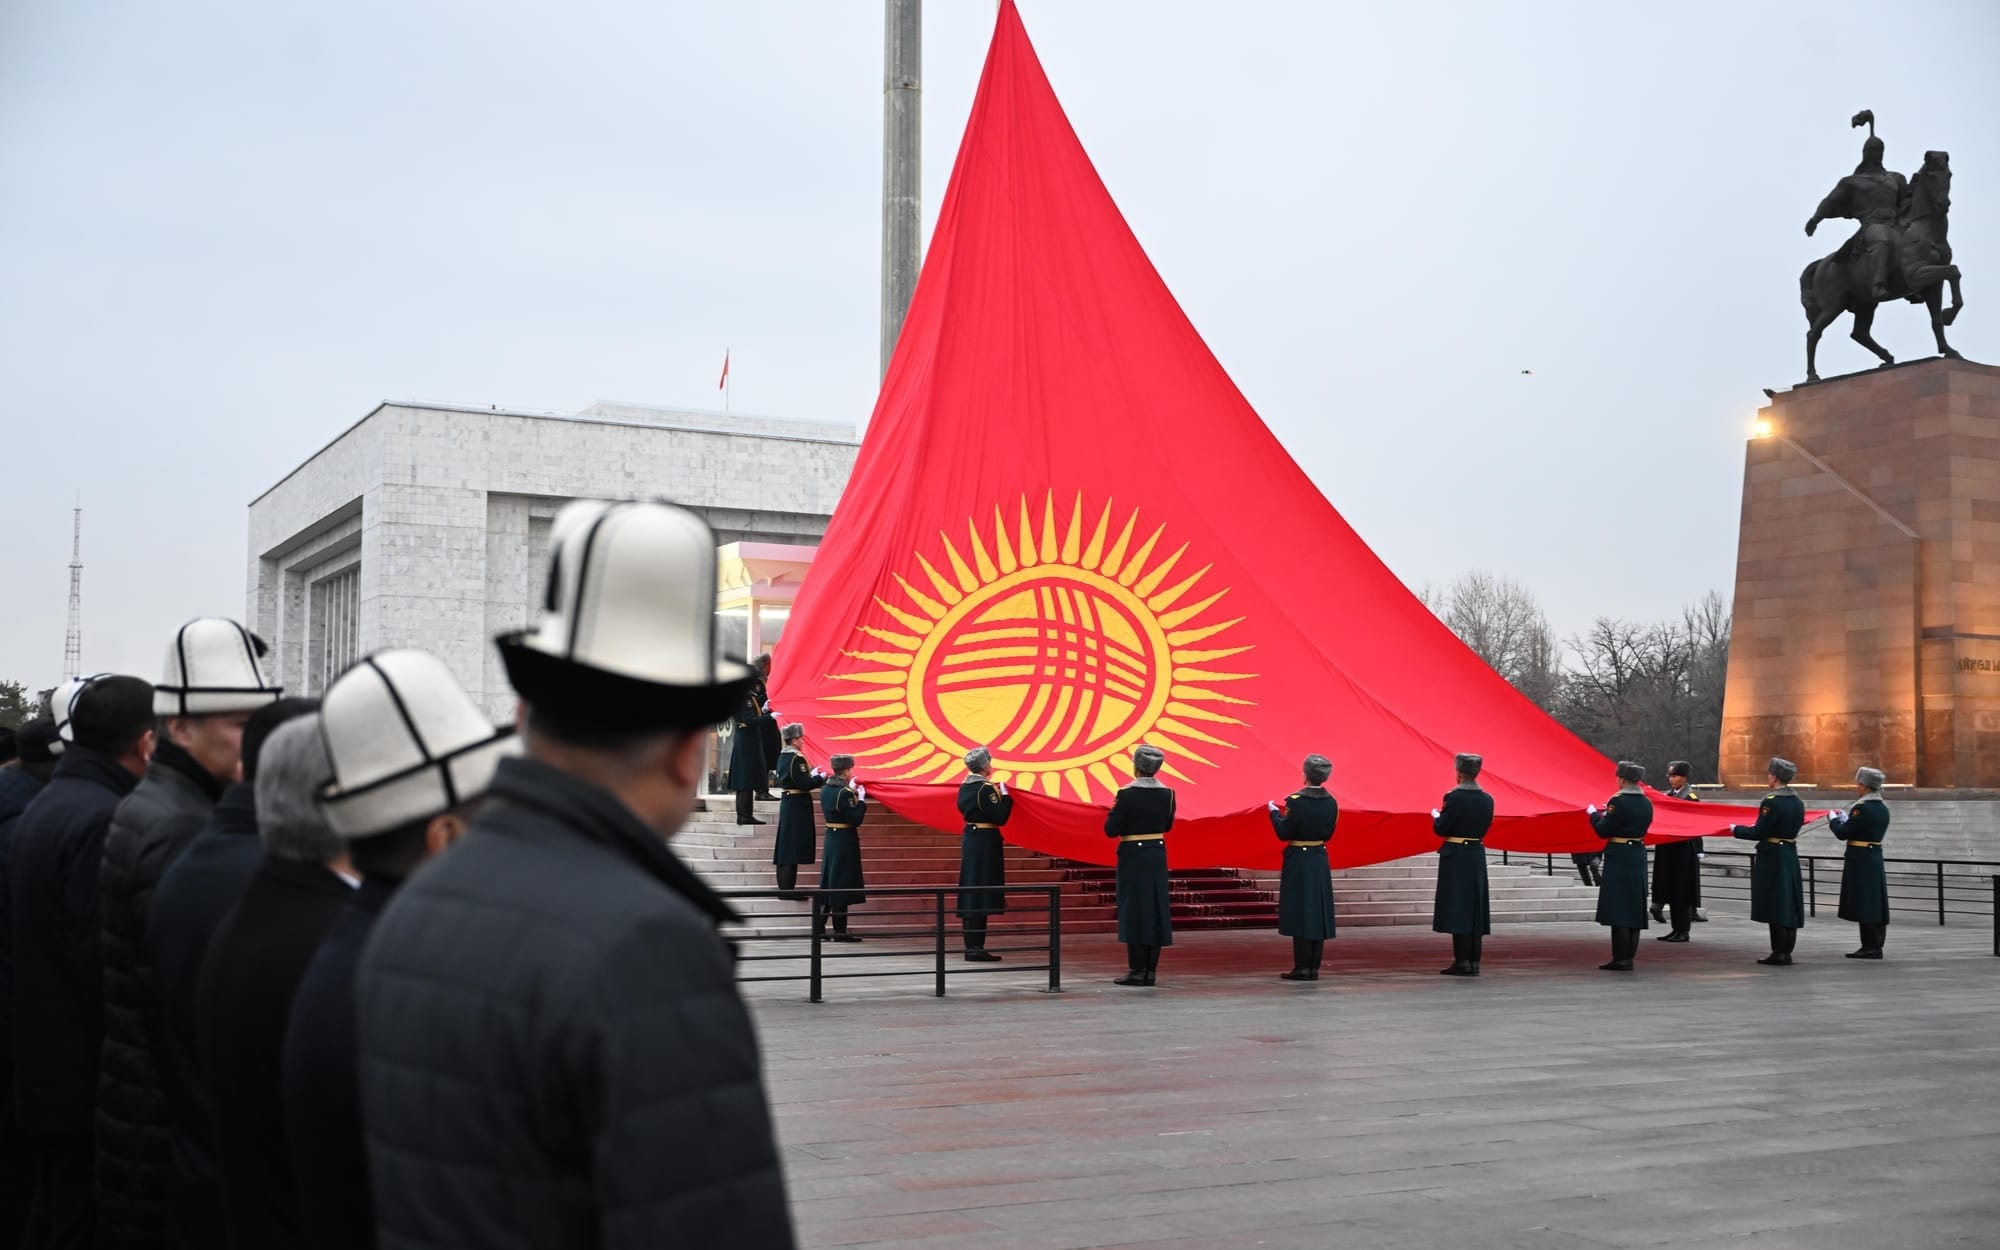 Сколько денег потратят на установку 100-метрового флагштока? Ответ мэрии Бишкека